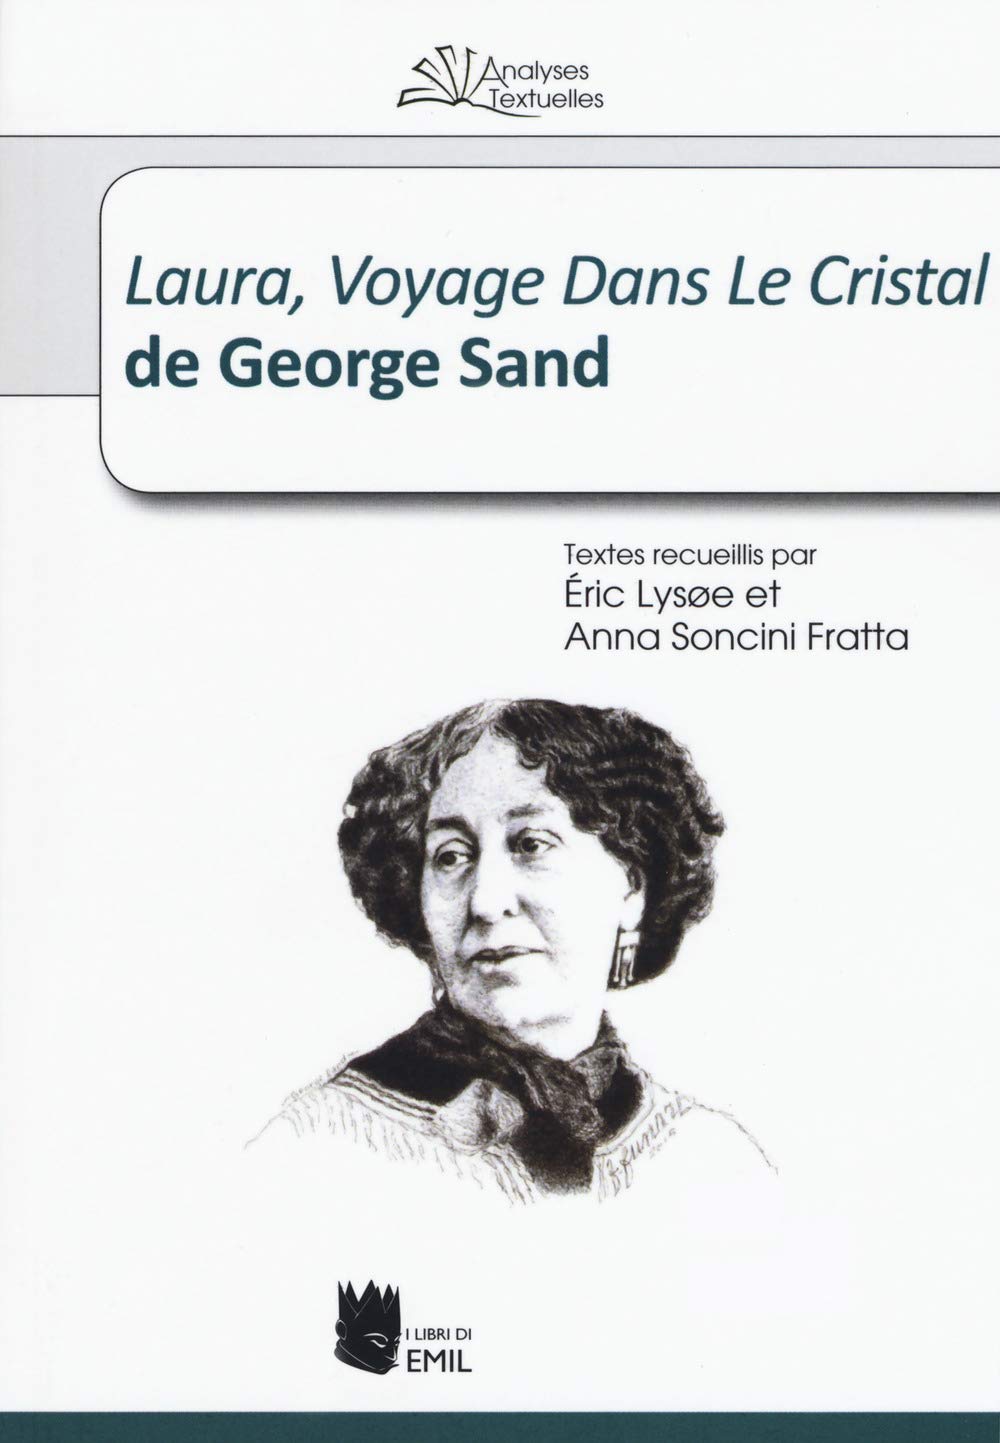 Laura, Voyage Dans Le Cristal de George Sand.jpg